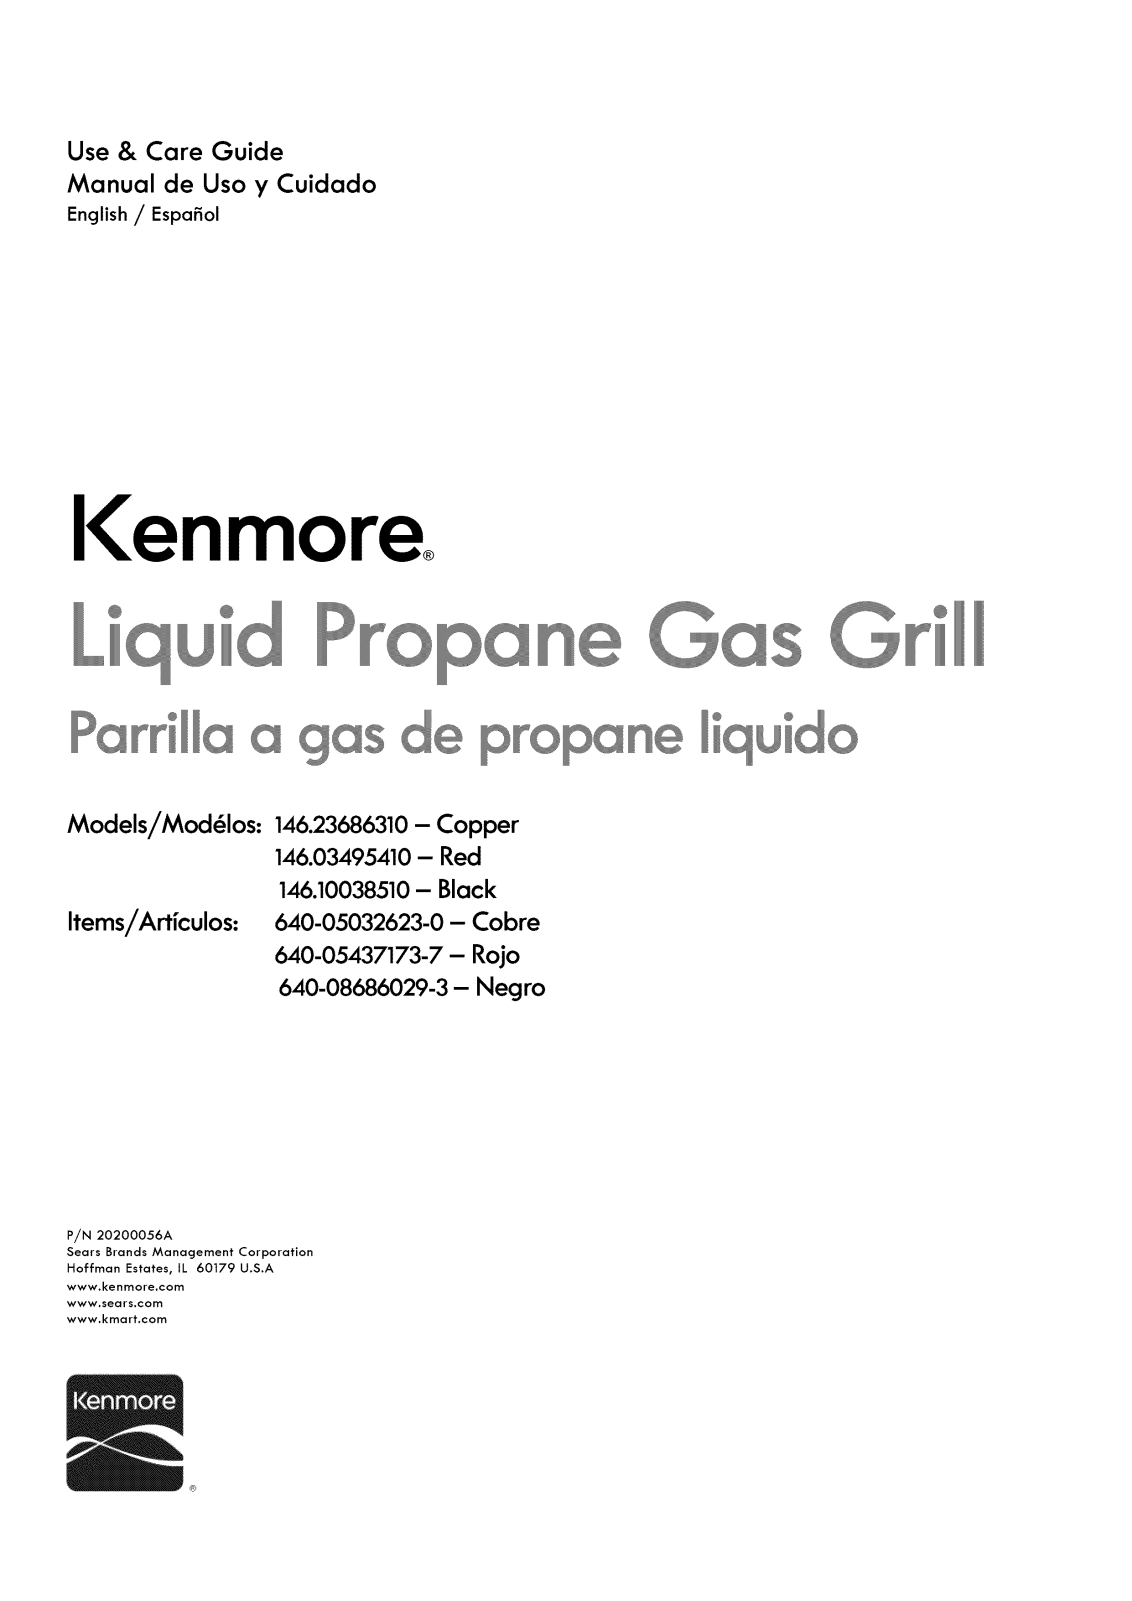 Kenmore 640-05032623-0, 14610038510, 14603495410 Owner’s Manual